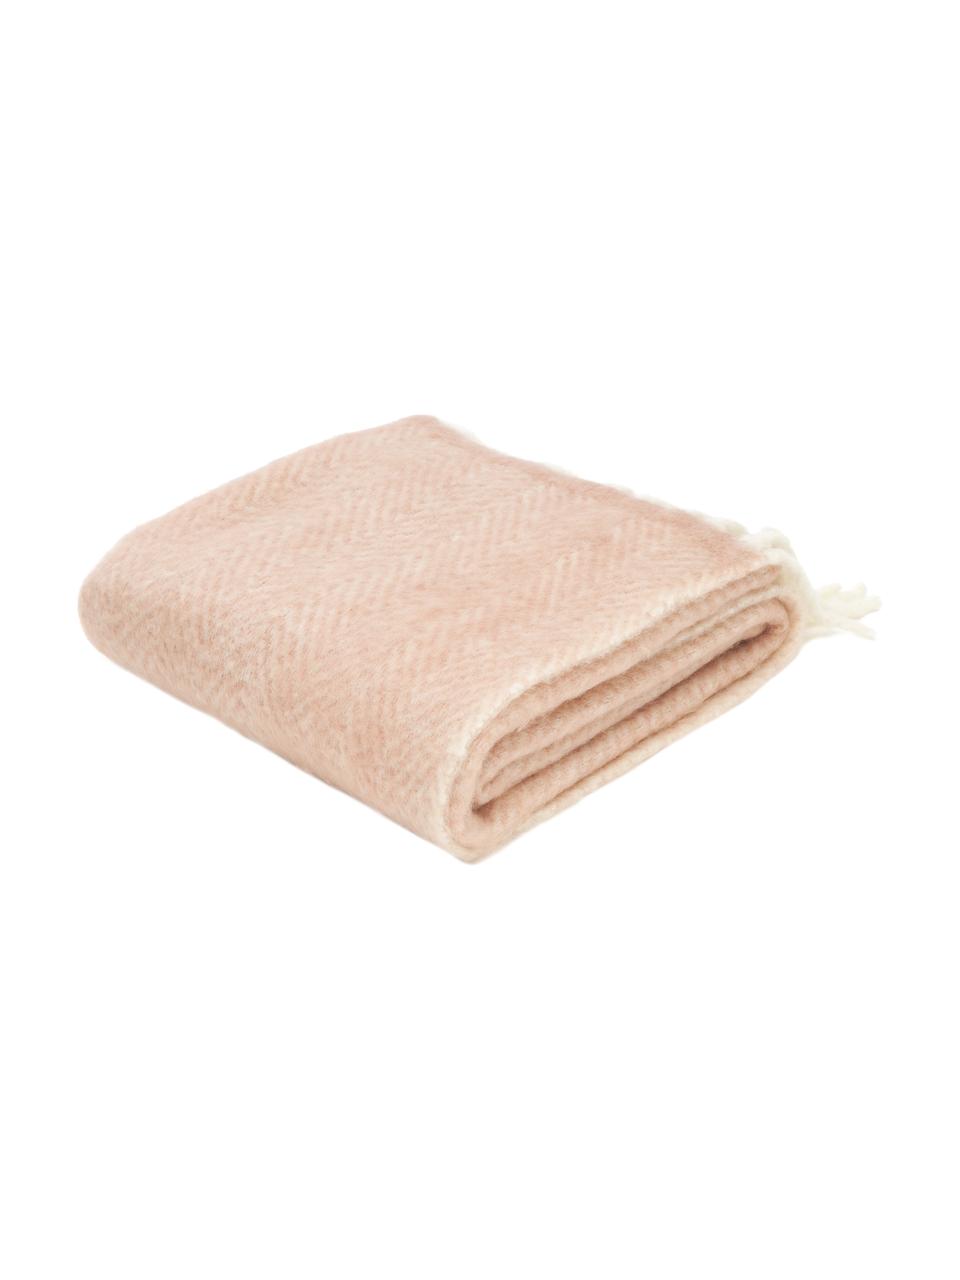 Plaid en laine Melange, 60 % laine, 25 % acrylique, 15 % nylon, Rose blush, larg. 170 x long. 130 cm